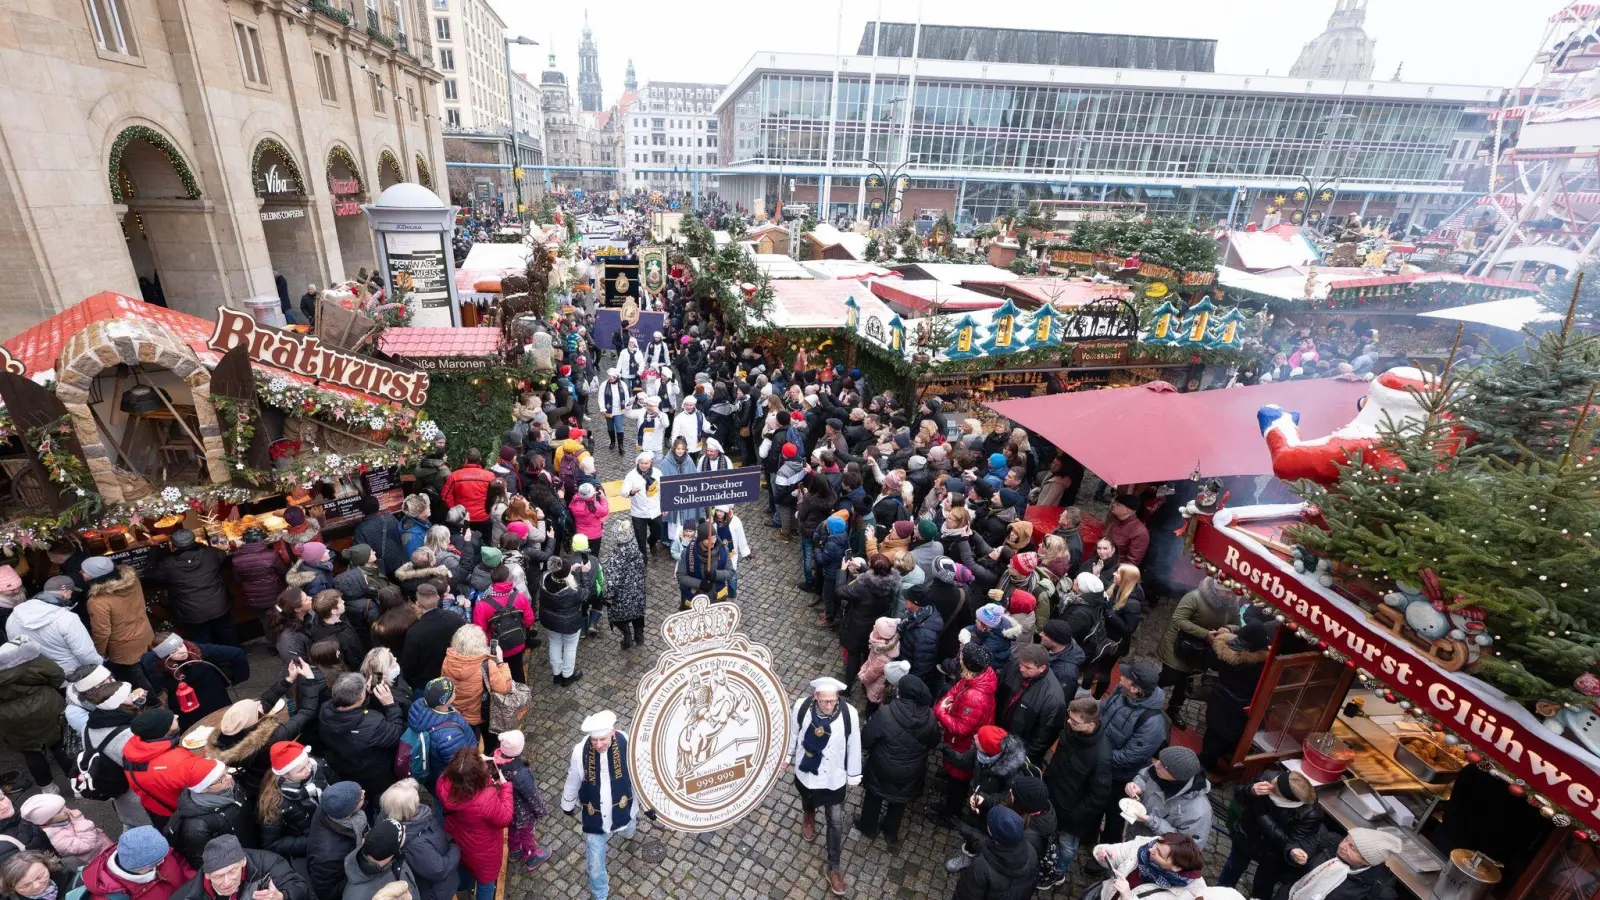 Teilnehmer des Festumzugs zum Dresdner Stollenfest gehen über den Striezelmarkt. (Foto: Sebastian Kahnert/dpa)